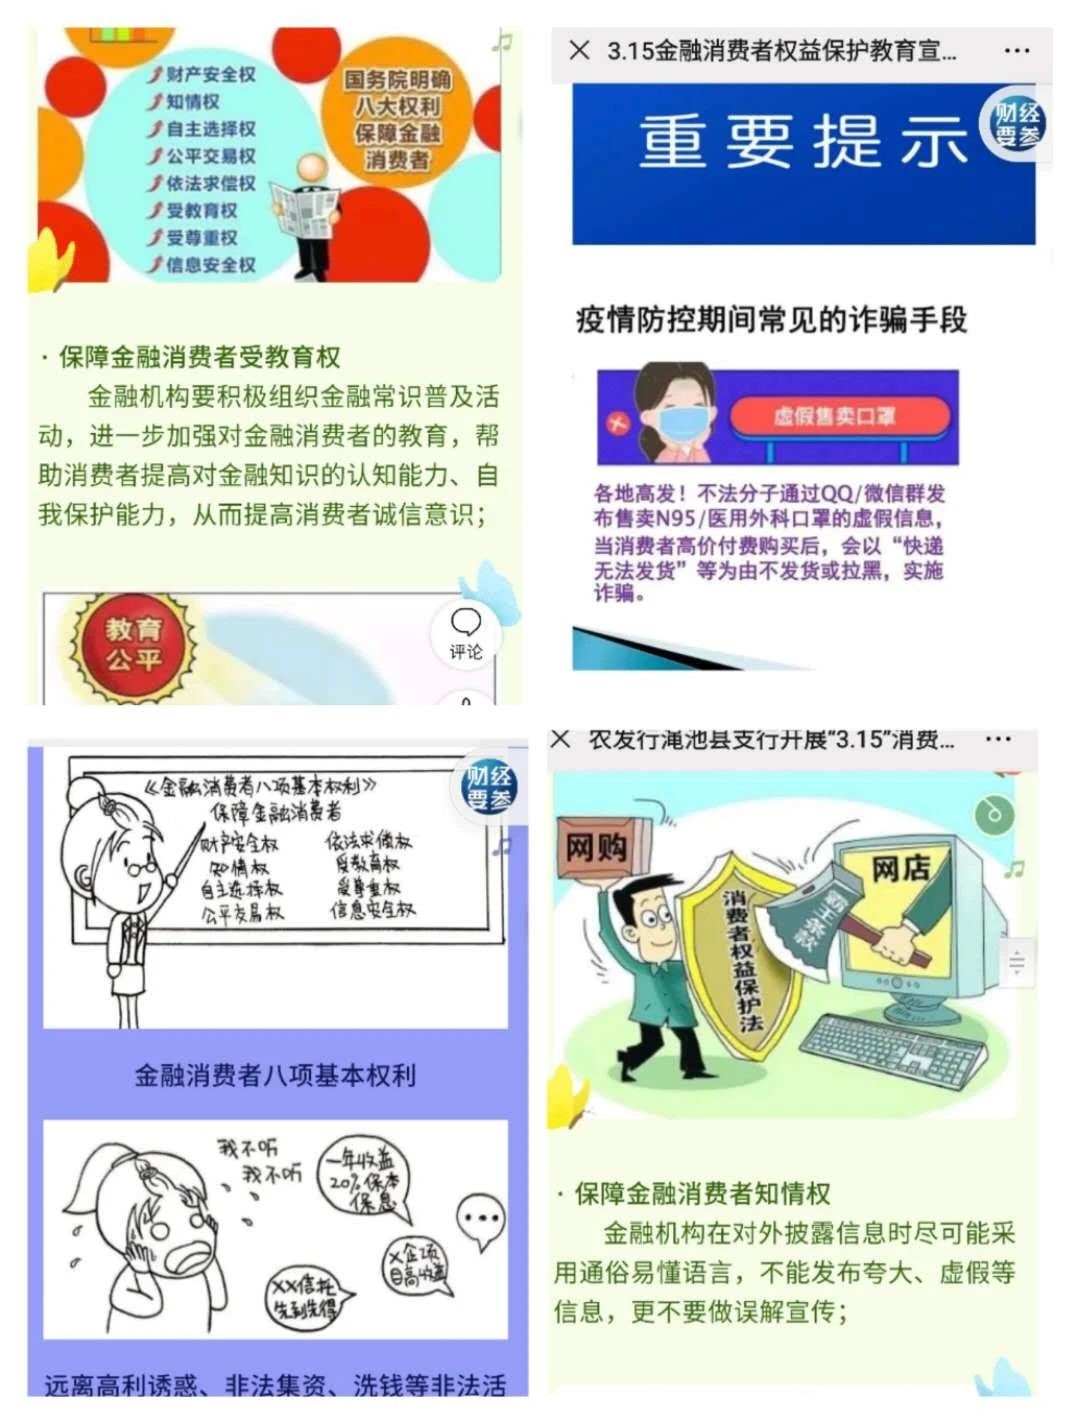 农发行河南省分行全面启动“3.15”消费者权益保护教育宣传周活动